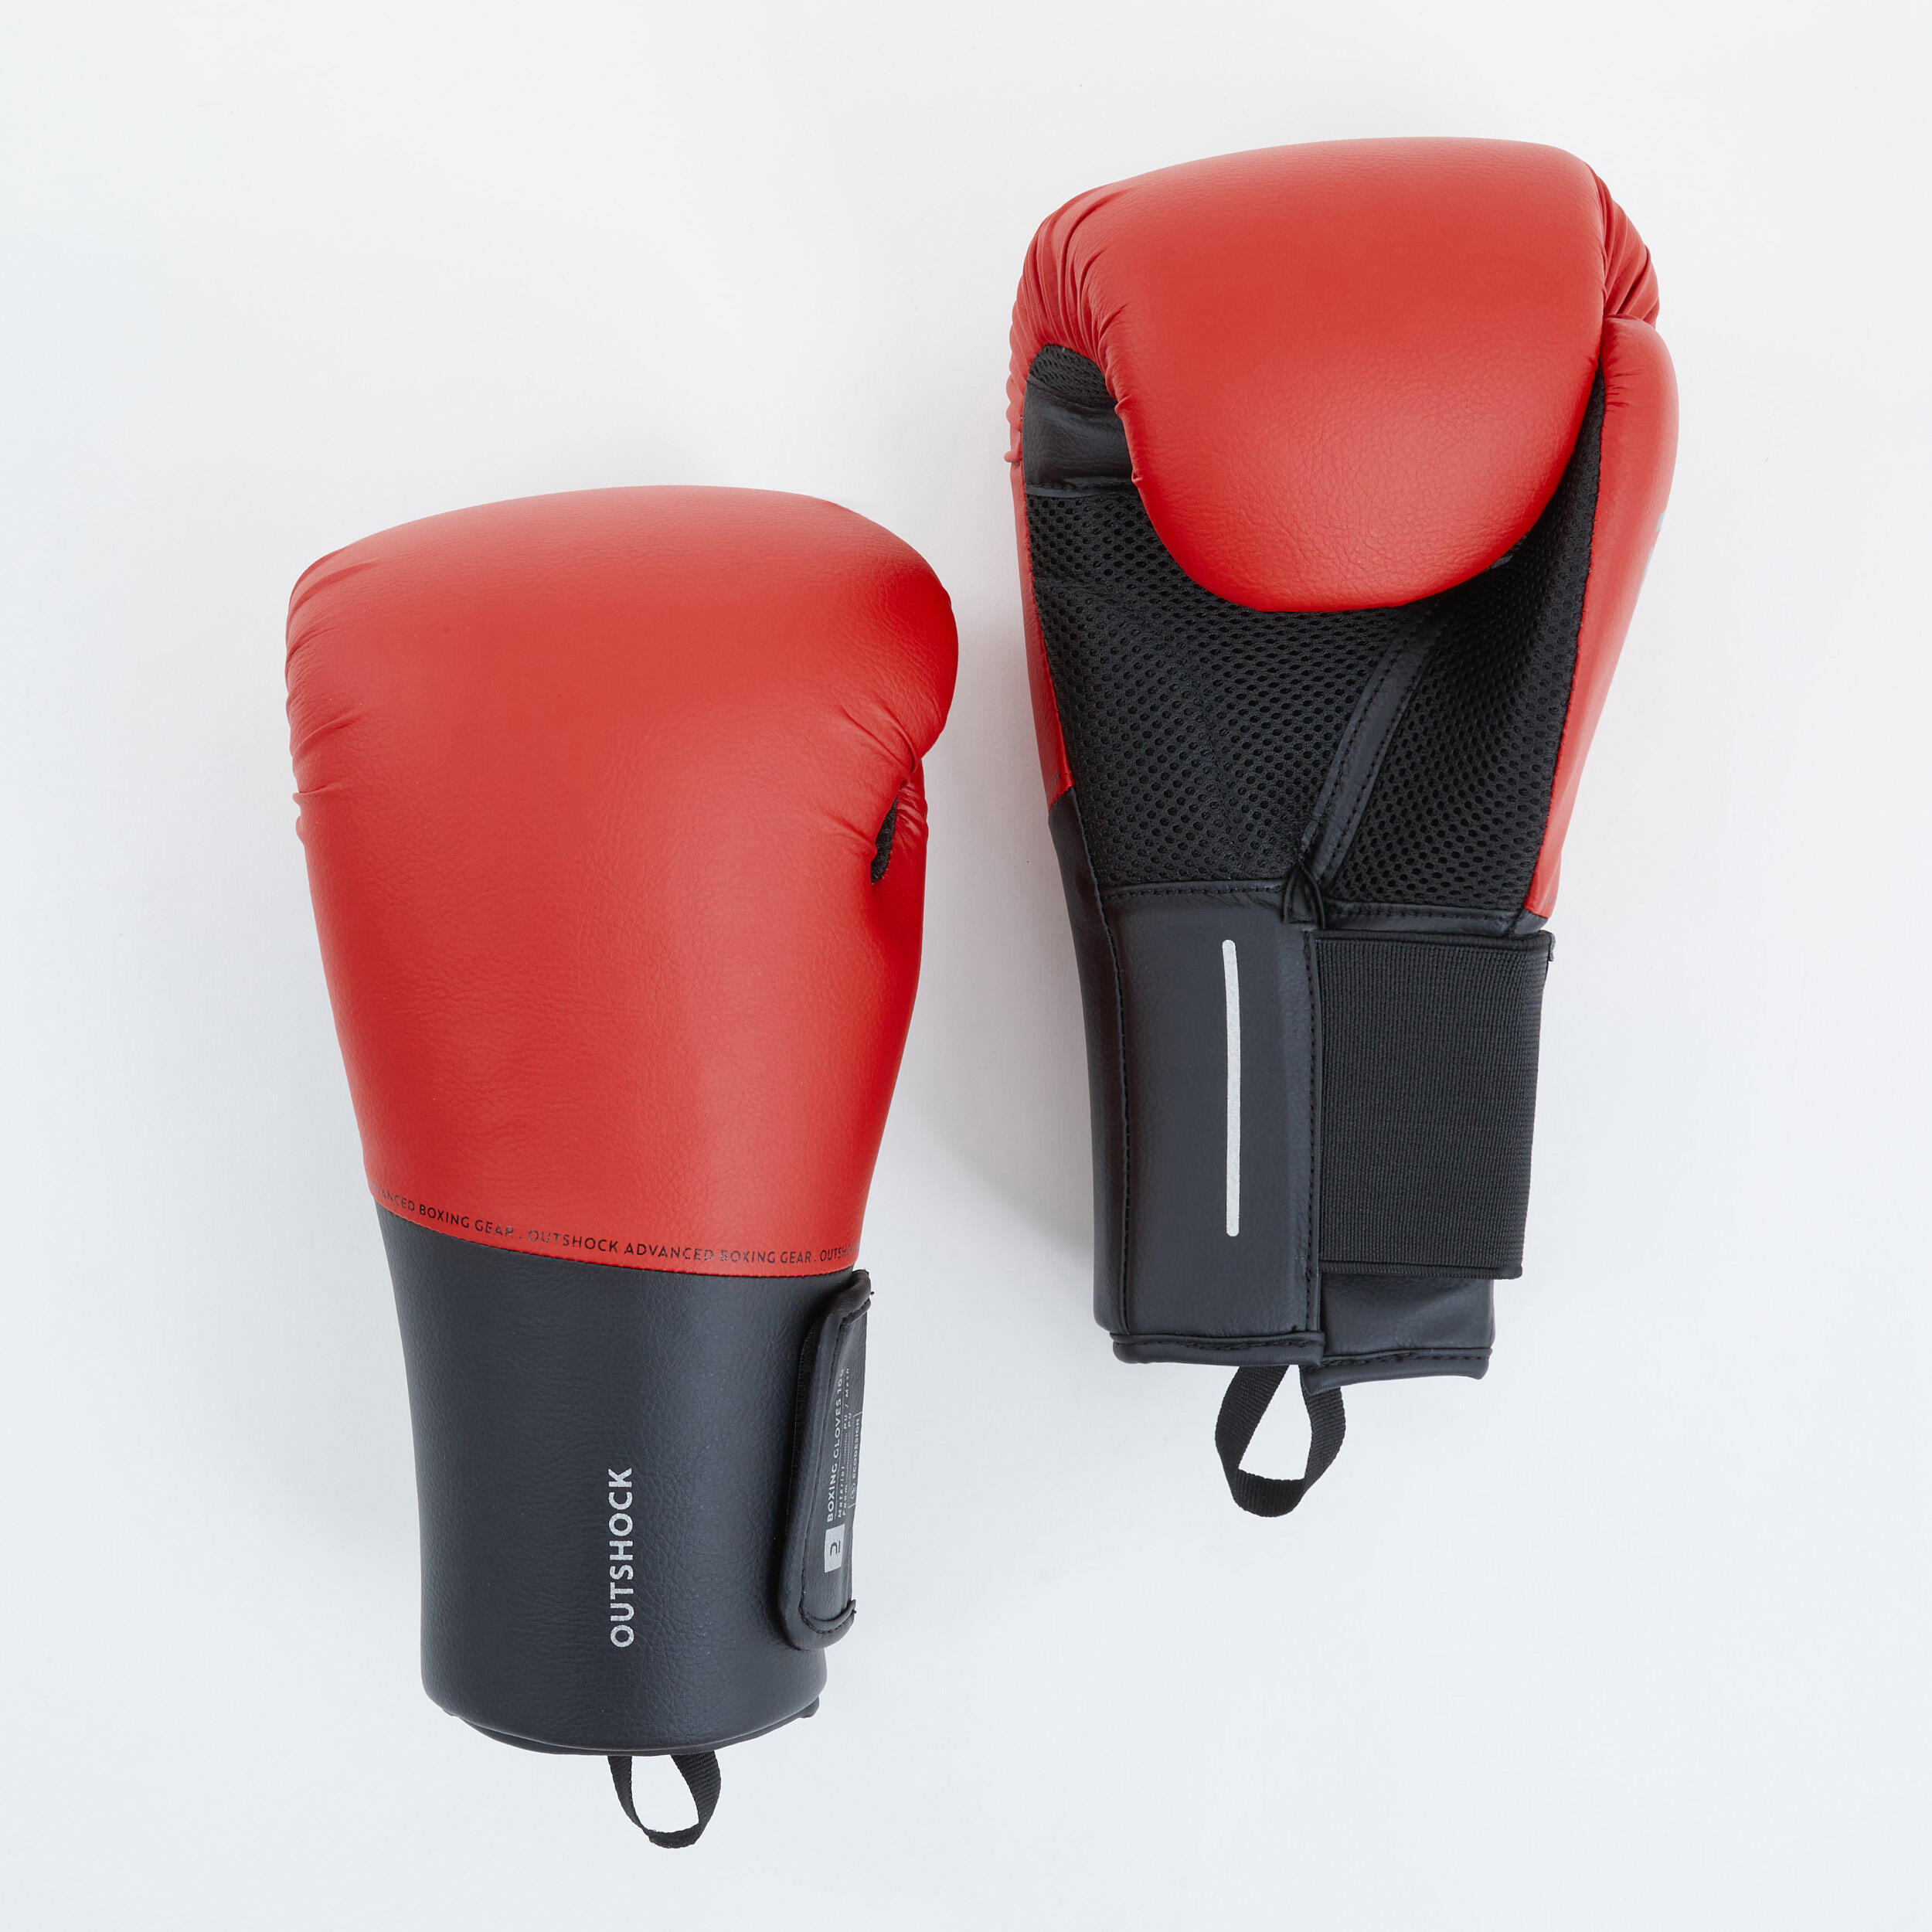 kickboxing allenamento boxe Odoland Set di guanti da boxe e set di calci rosso oro blu muay thai tappetino da boxe Taewondo ideale per boxe guanti da boxe karate 